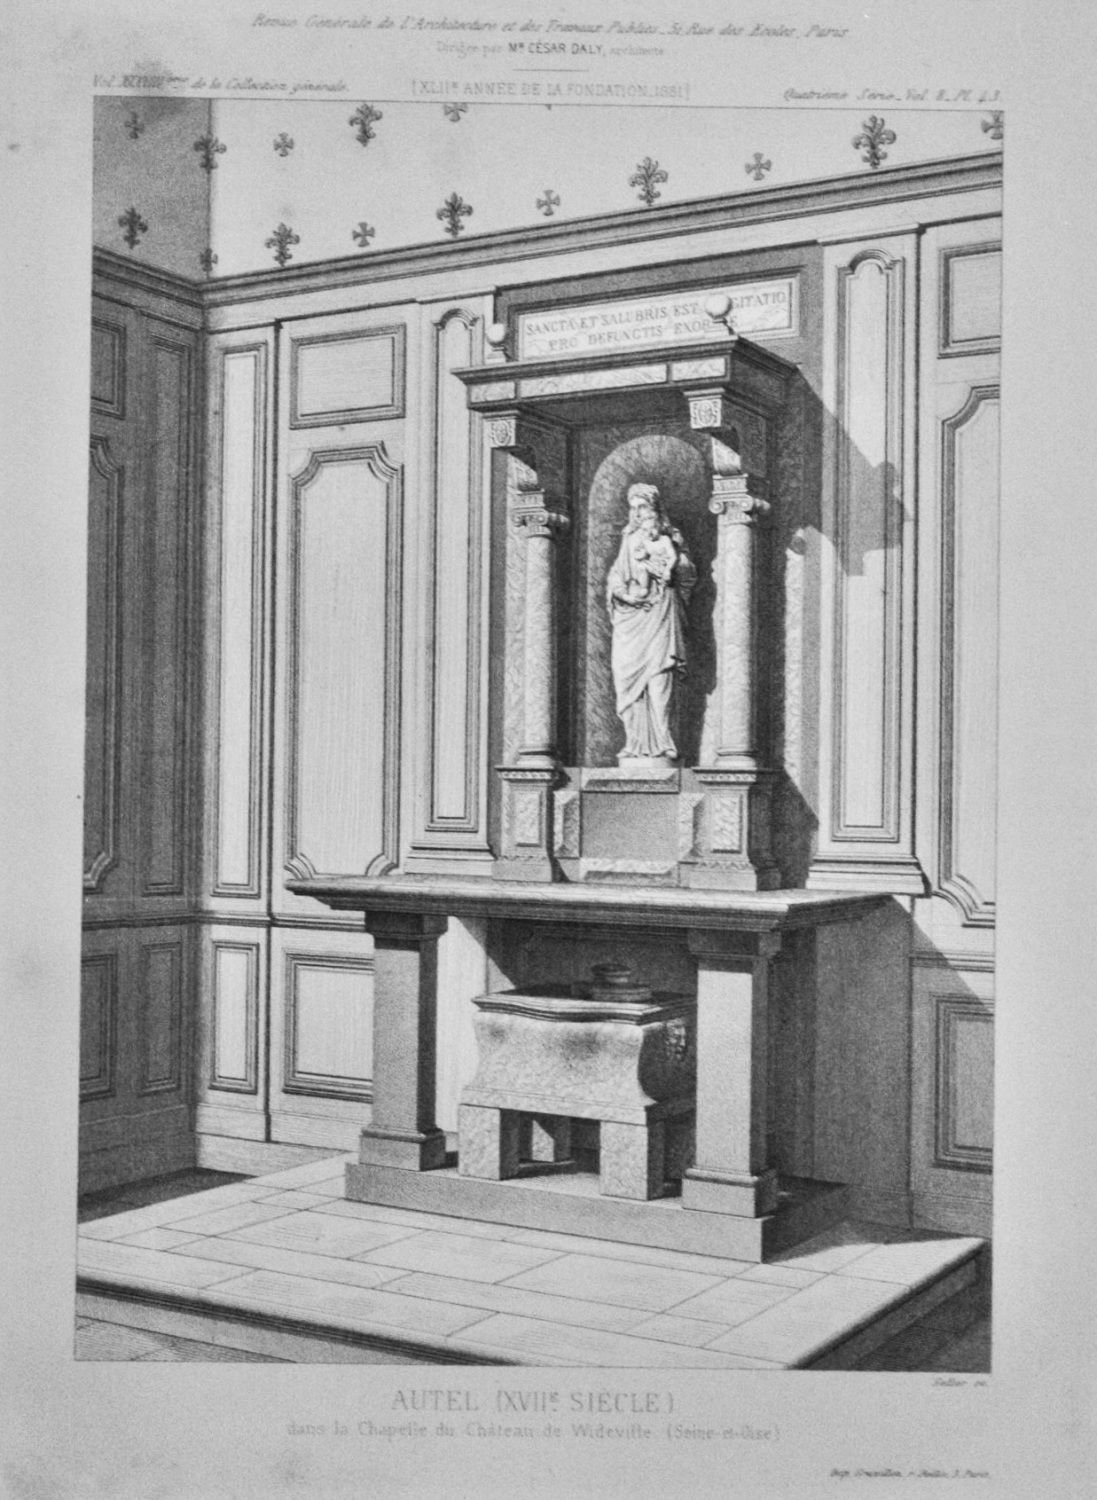 Autel  (XVIIe  Siecle)  dans la Chapelle du Chateau de Wideville. (Seine-et